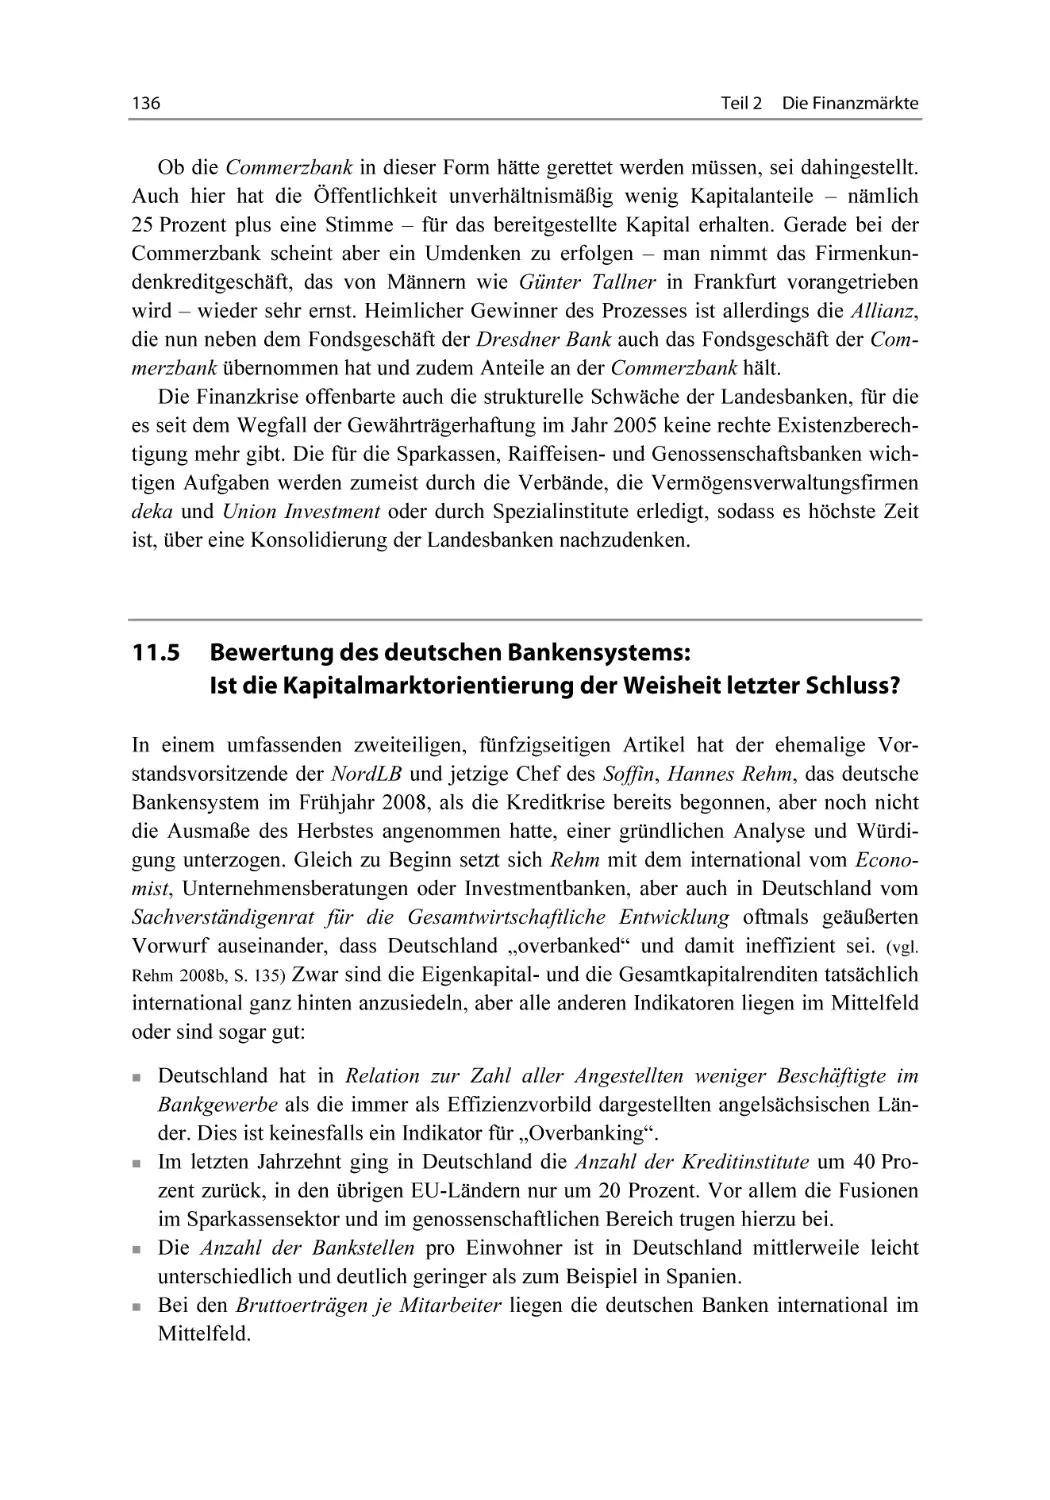 11.5 Bewertung des deutschen Bankensystems